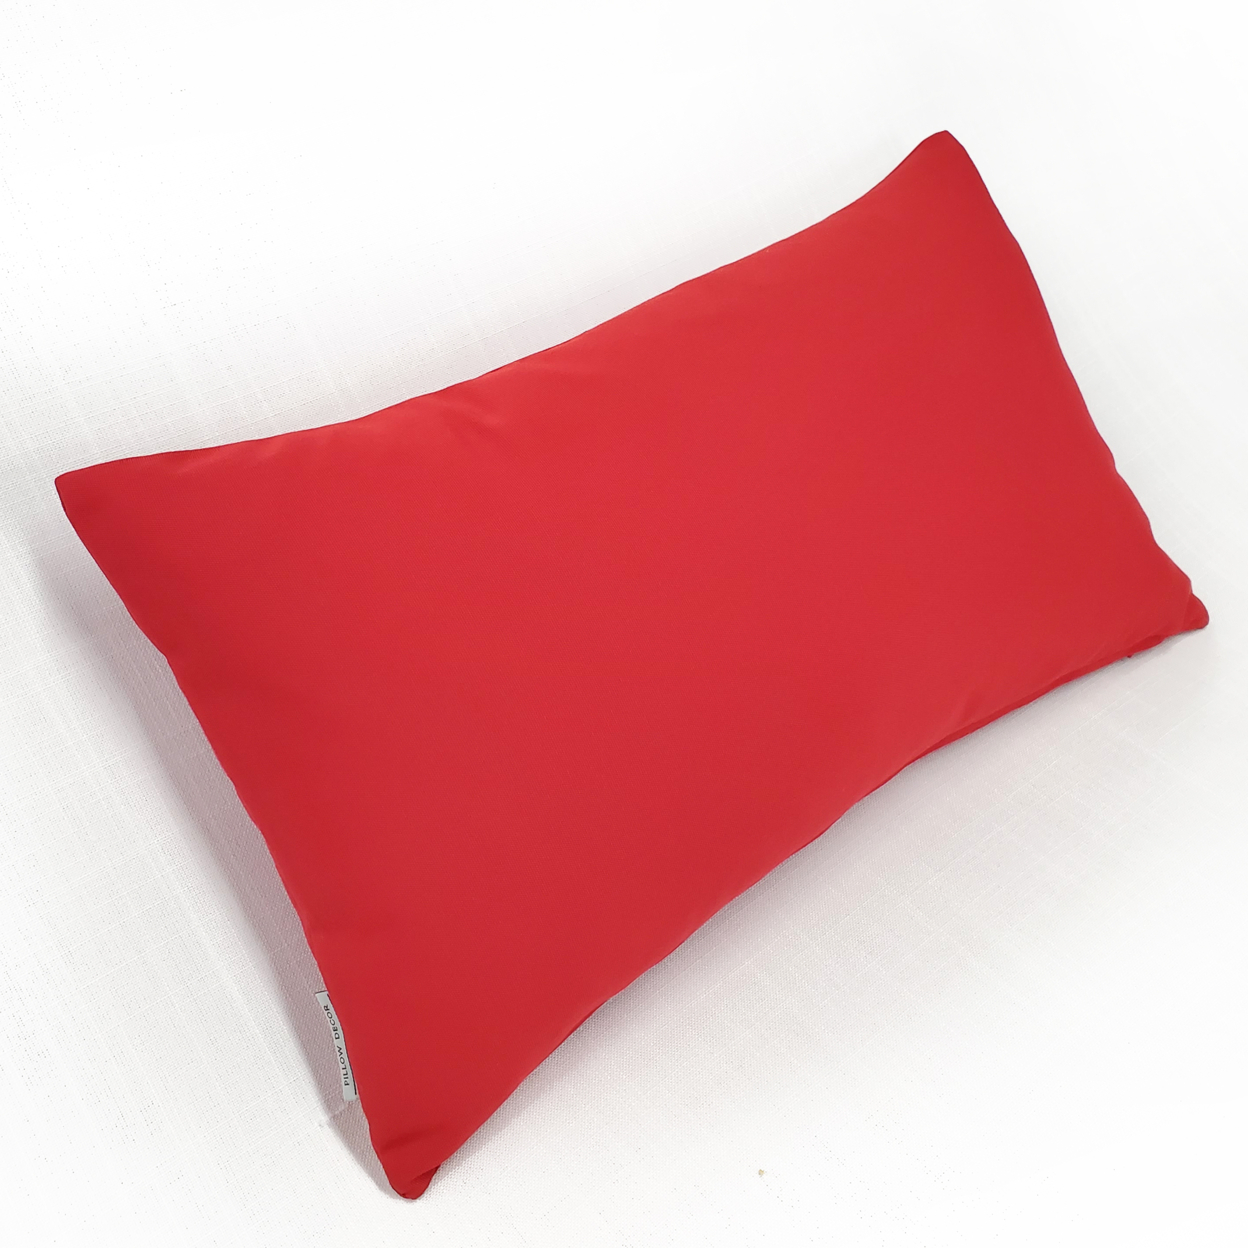 Sunbrella Jockey Red Outdoor Pillow 12x19, With Polyfill Insert